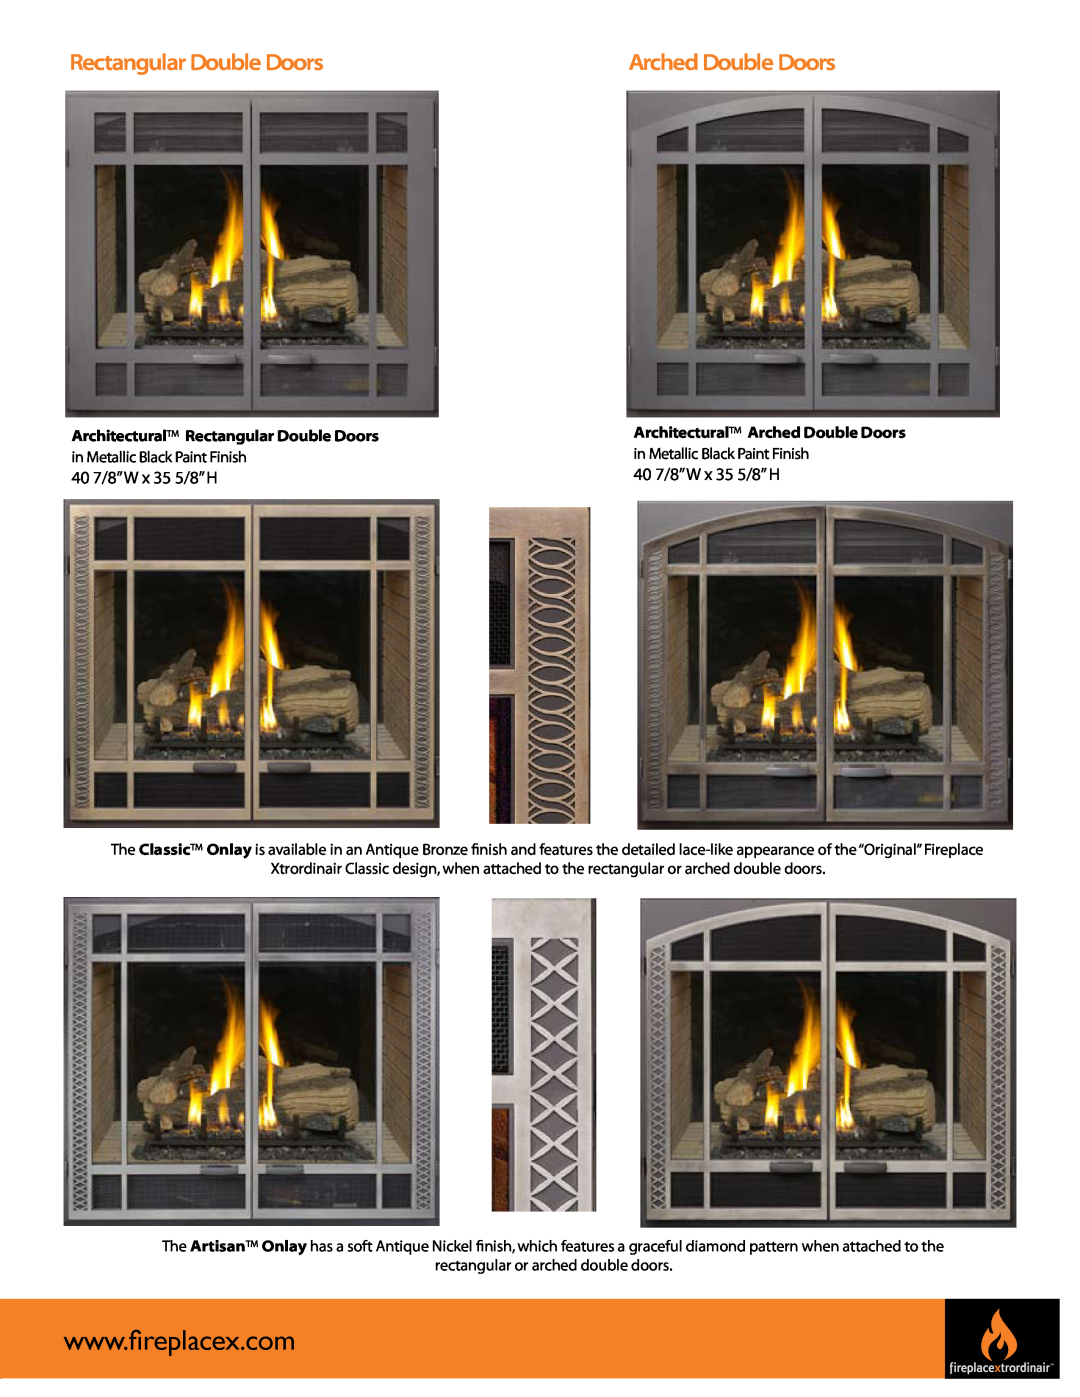 FireplaceXtrordinair 864 See-Thru manual Rectangular Double Doors, Arched Double Doors 